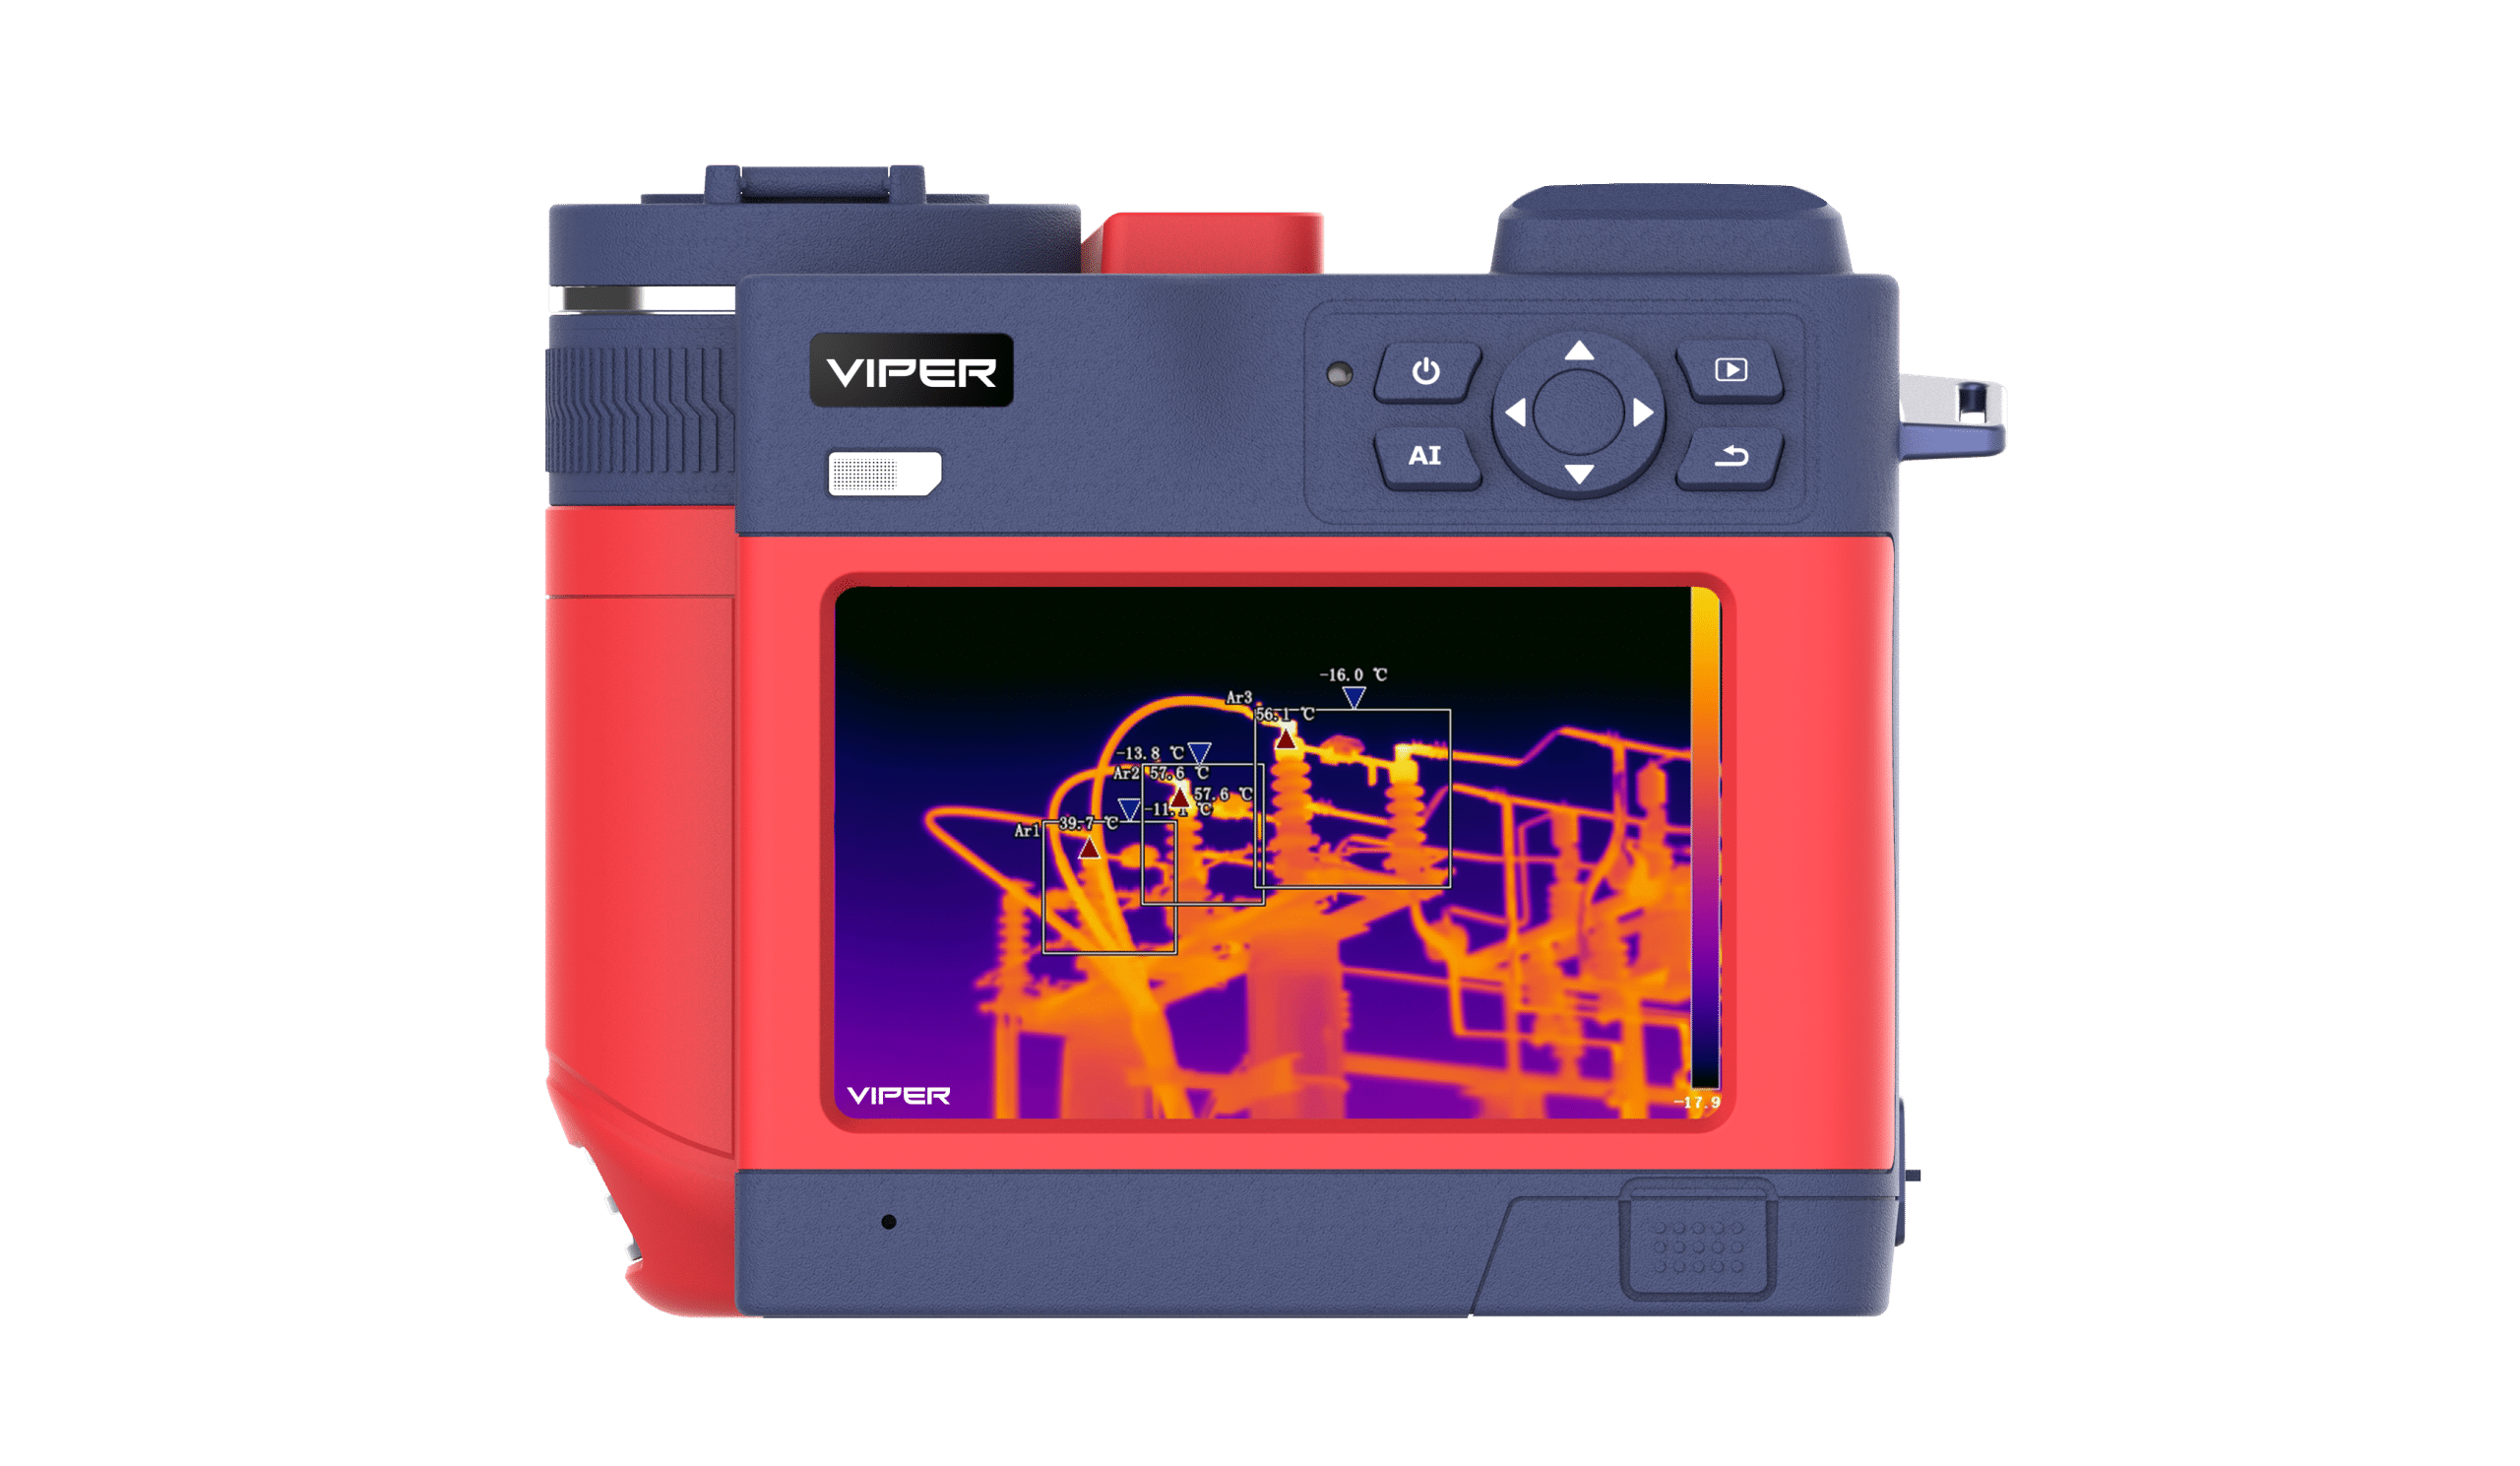 Viper P1280 and P640 premium handheld thermal camera - screen view